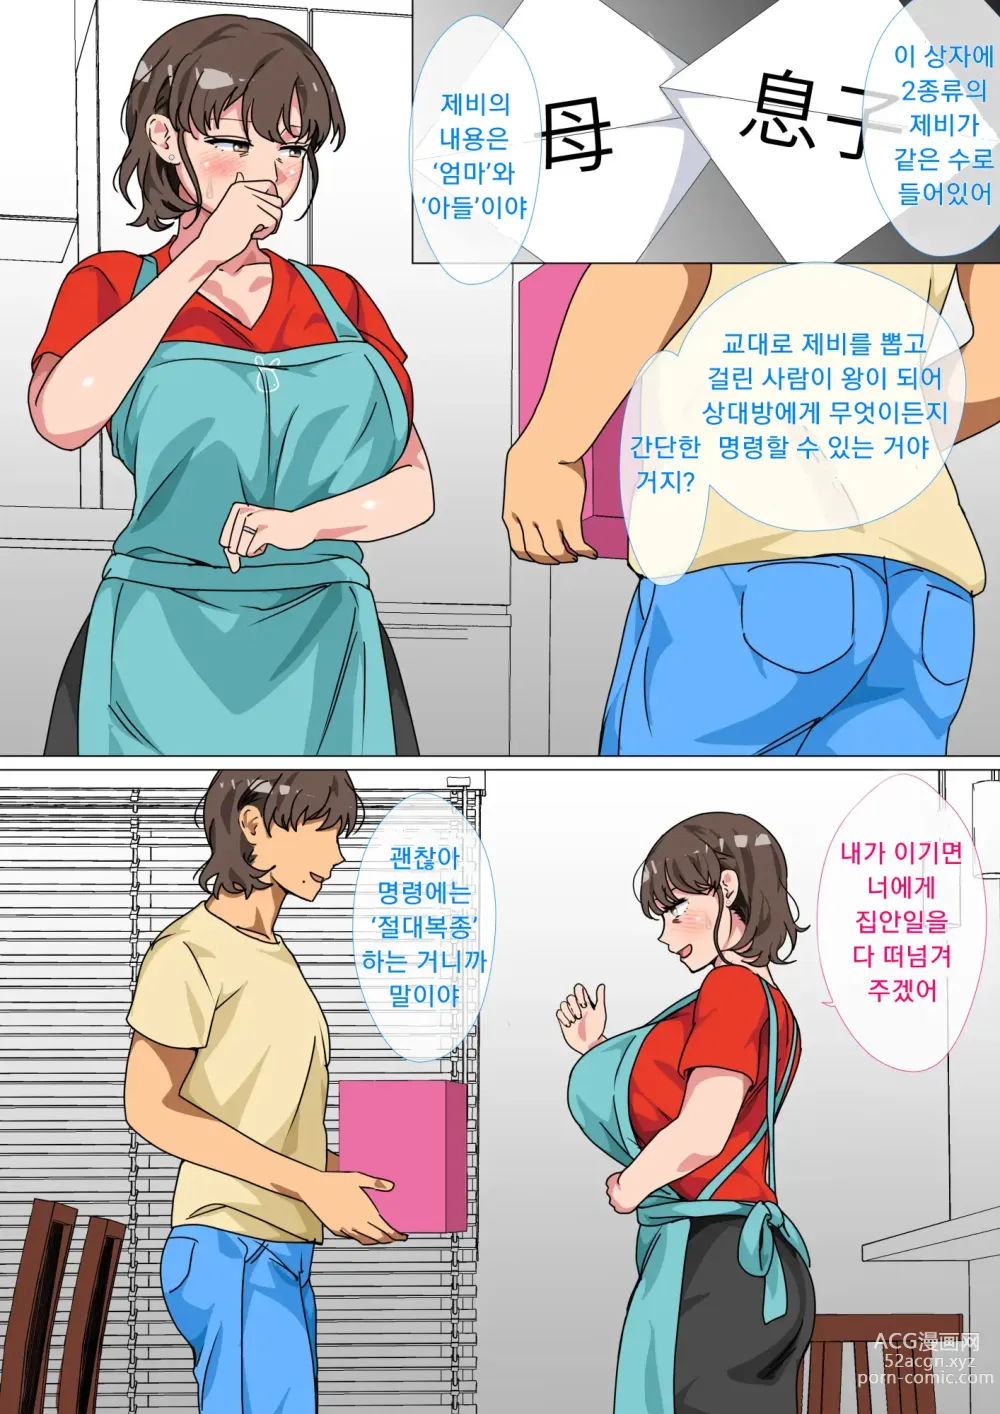 Page 9 of doujinshi 왕게임으로 명령해서 엄마랑 섹스한 이야기